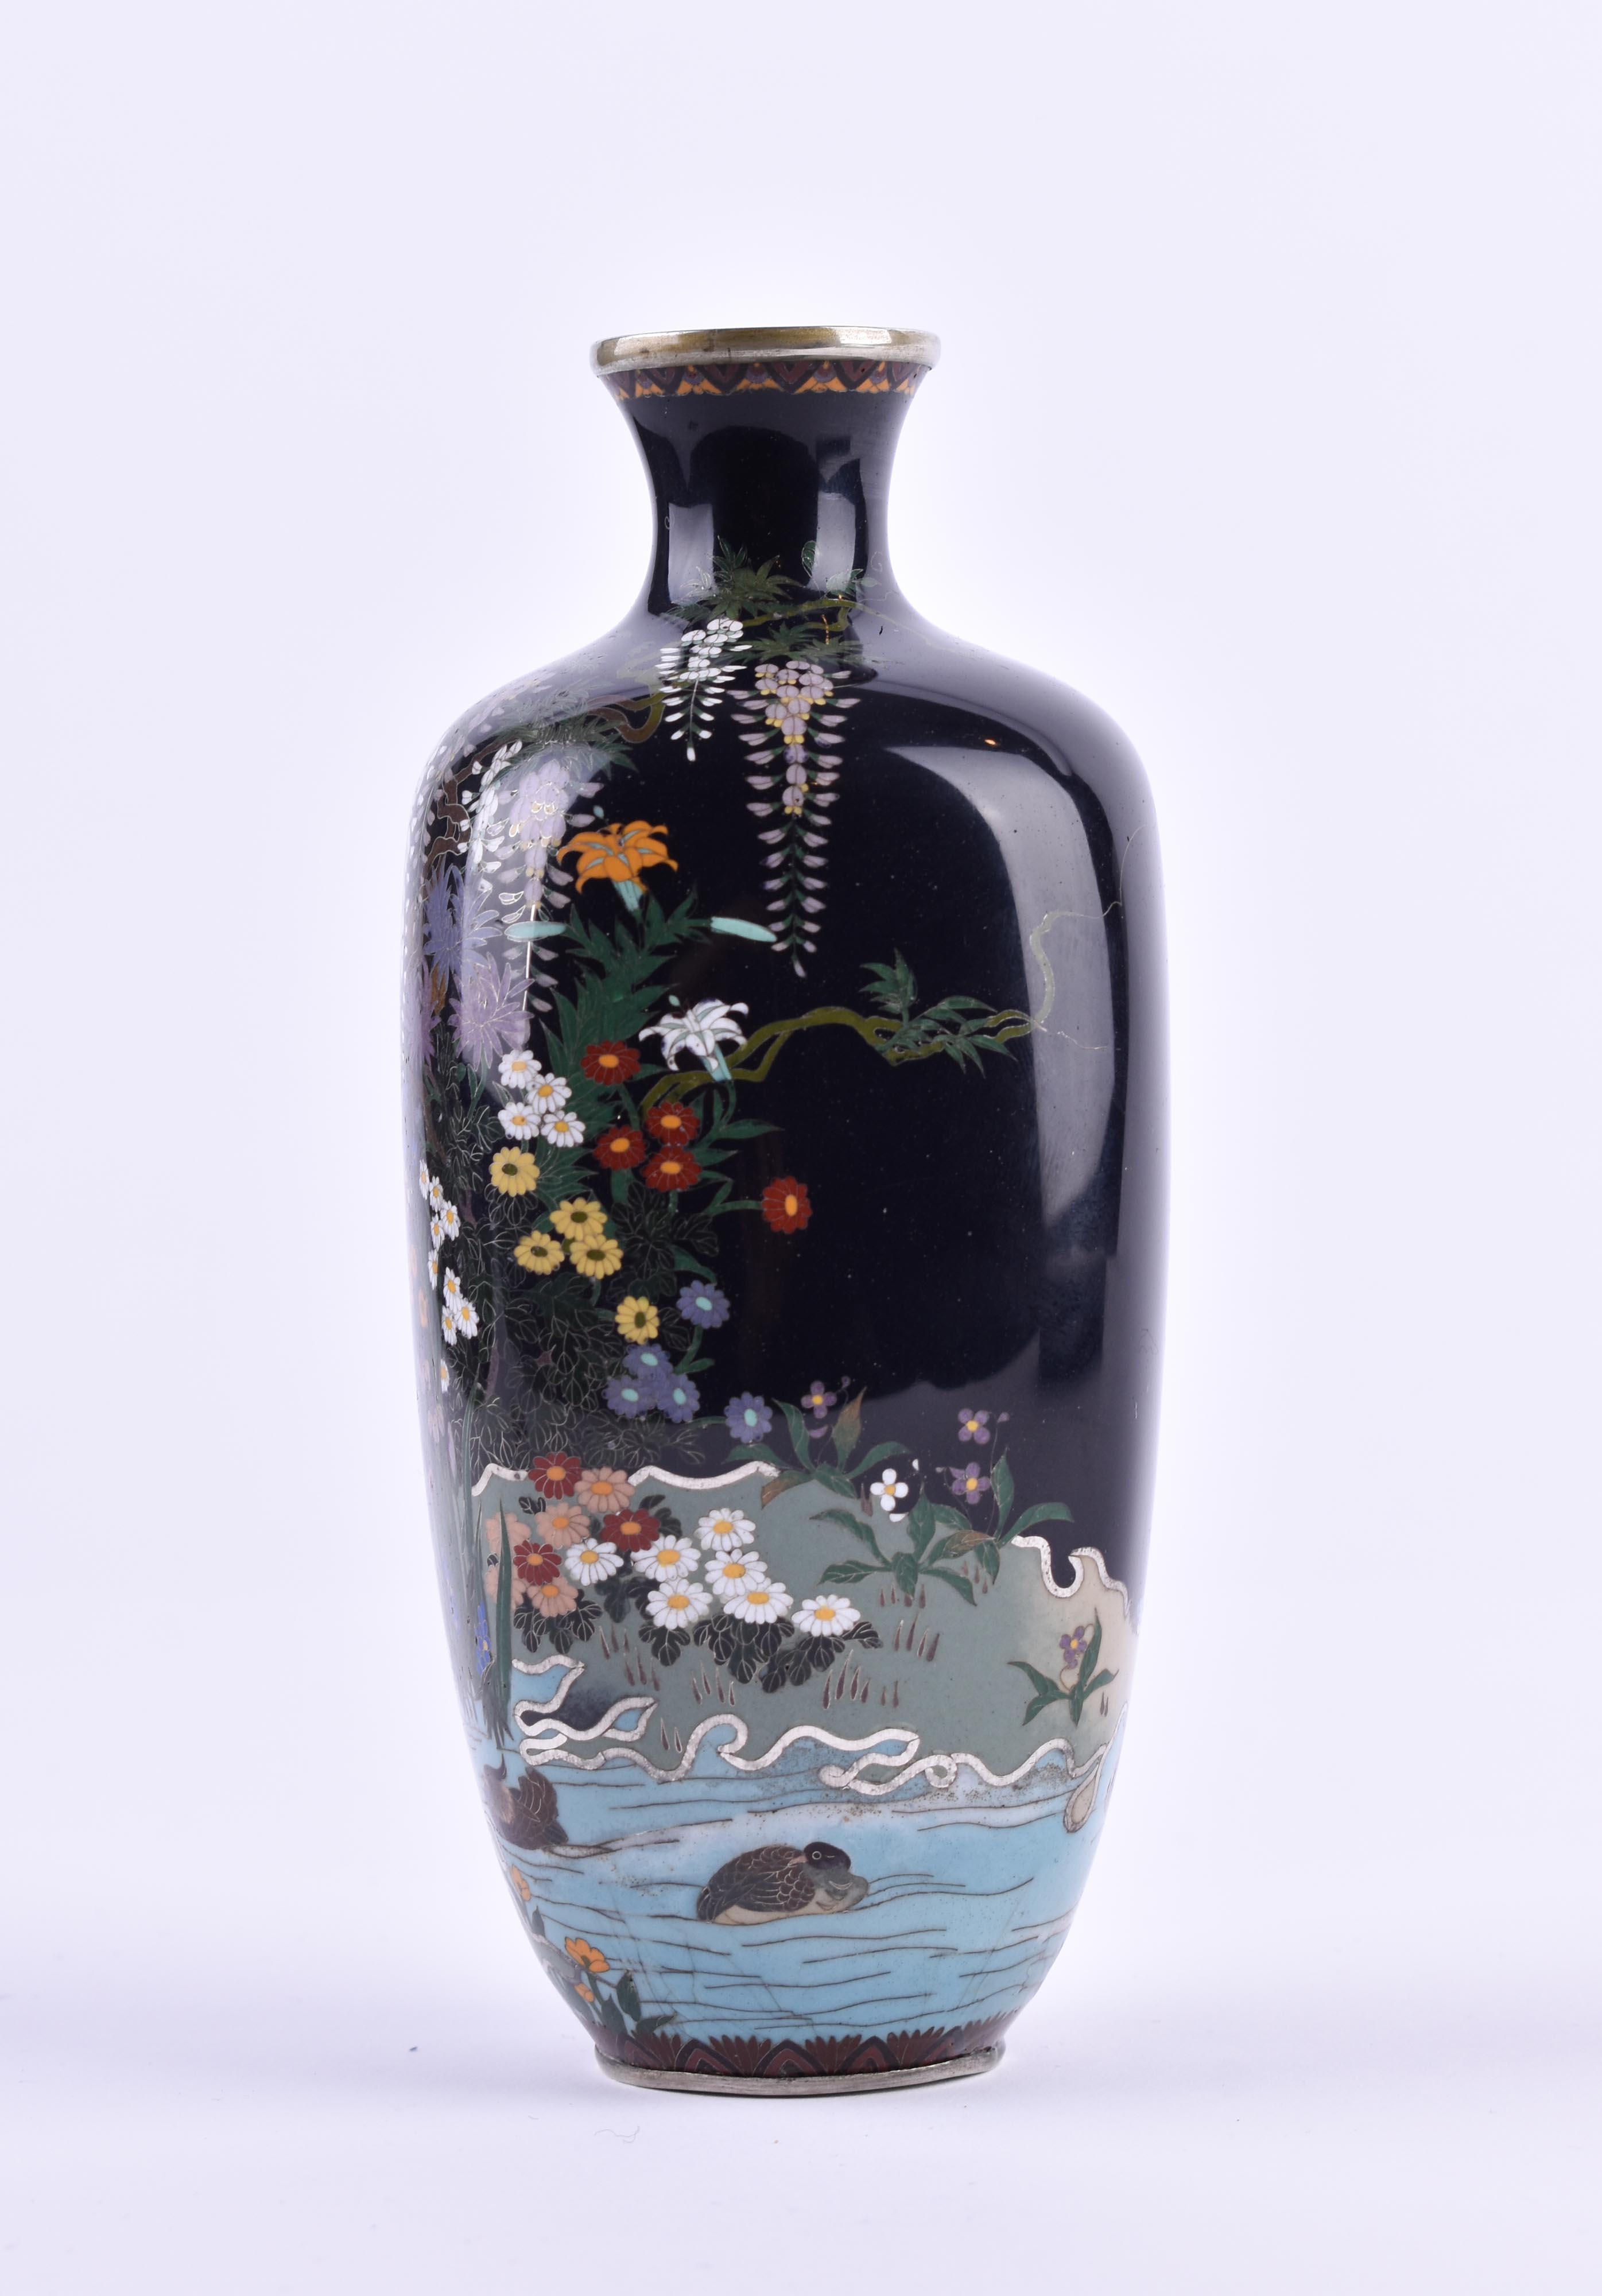  Cloisonne vase Japan Meiji period - Image 8 of 12